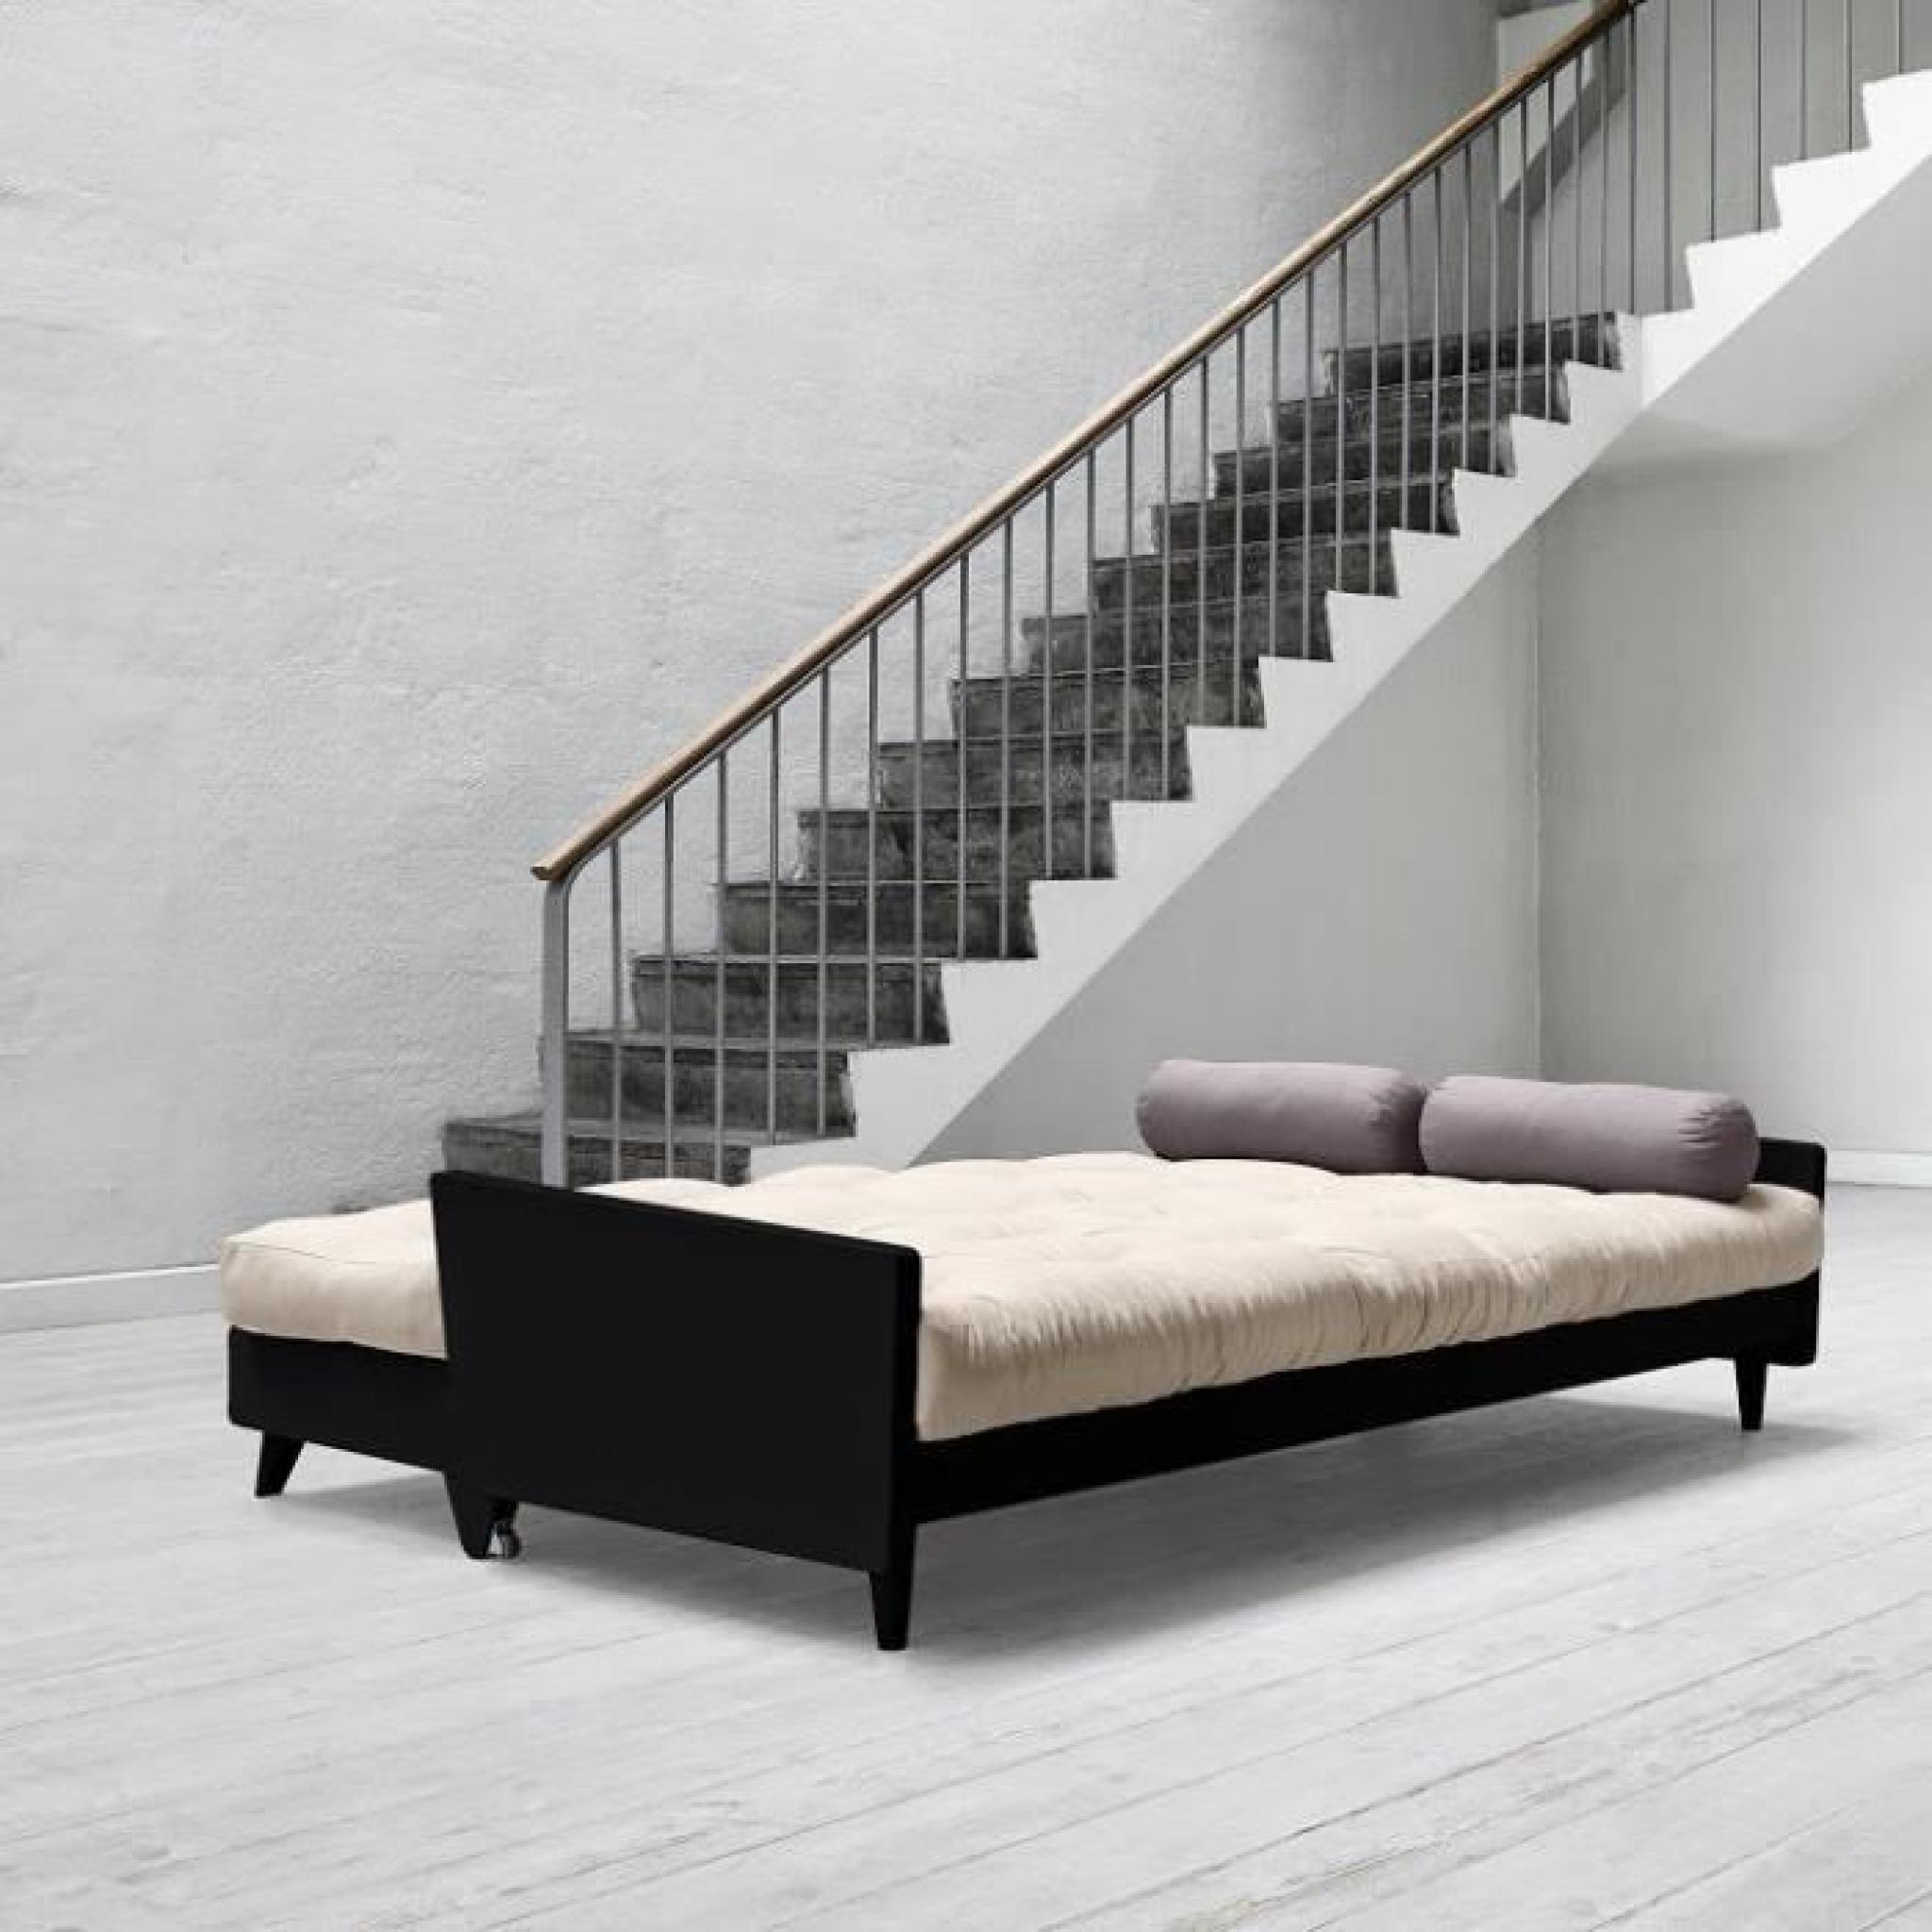 Canapé noir 3/4 places convertible INDIE futon taupe couchage 130*190cm pas cher